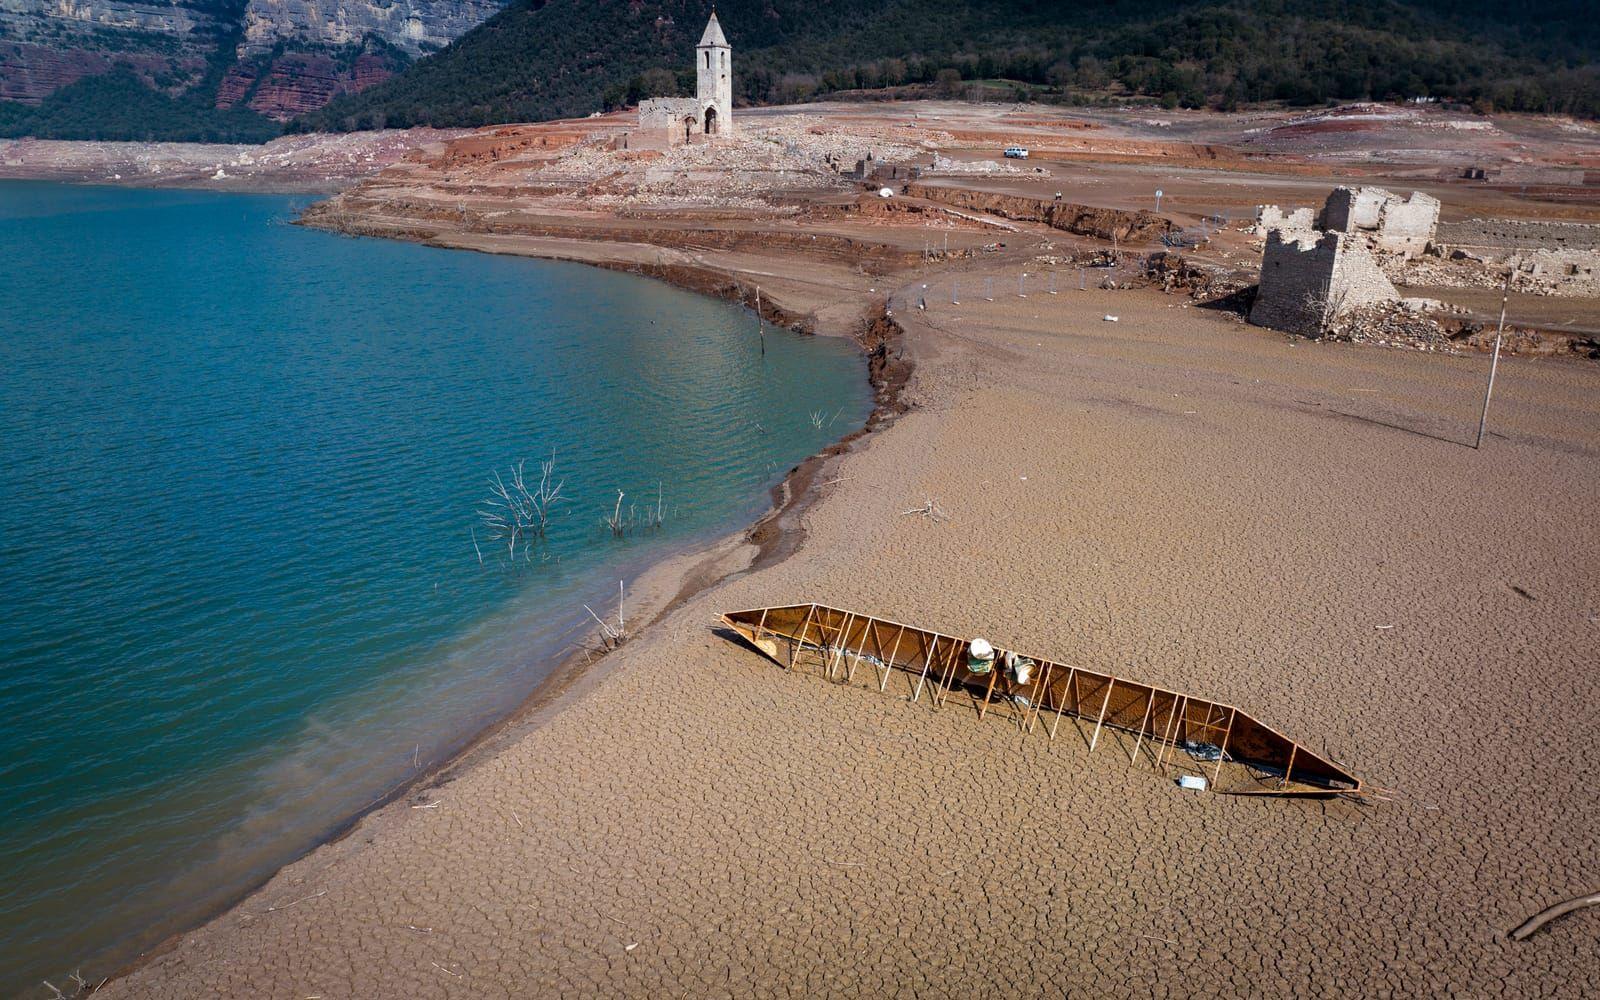 I mars månad var Sau-reservoaren på en nioprocentig kapacitet jämfört med normalt. Kyrkan på bilden brukar normalt sett vara under vatten, en rest från en gammal medeltida by som tidigare legat där, rapporterar CNN.